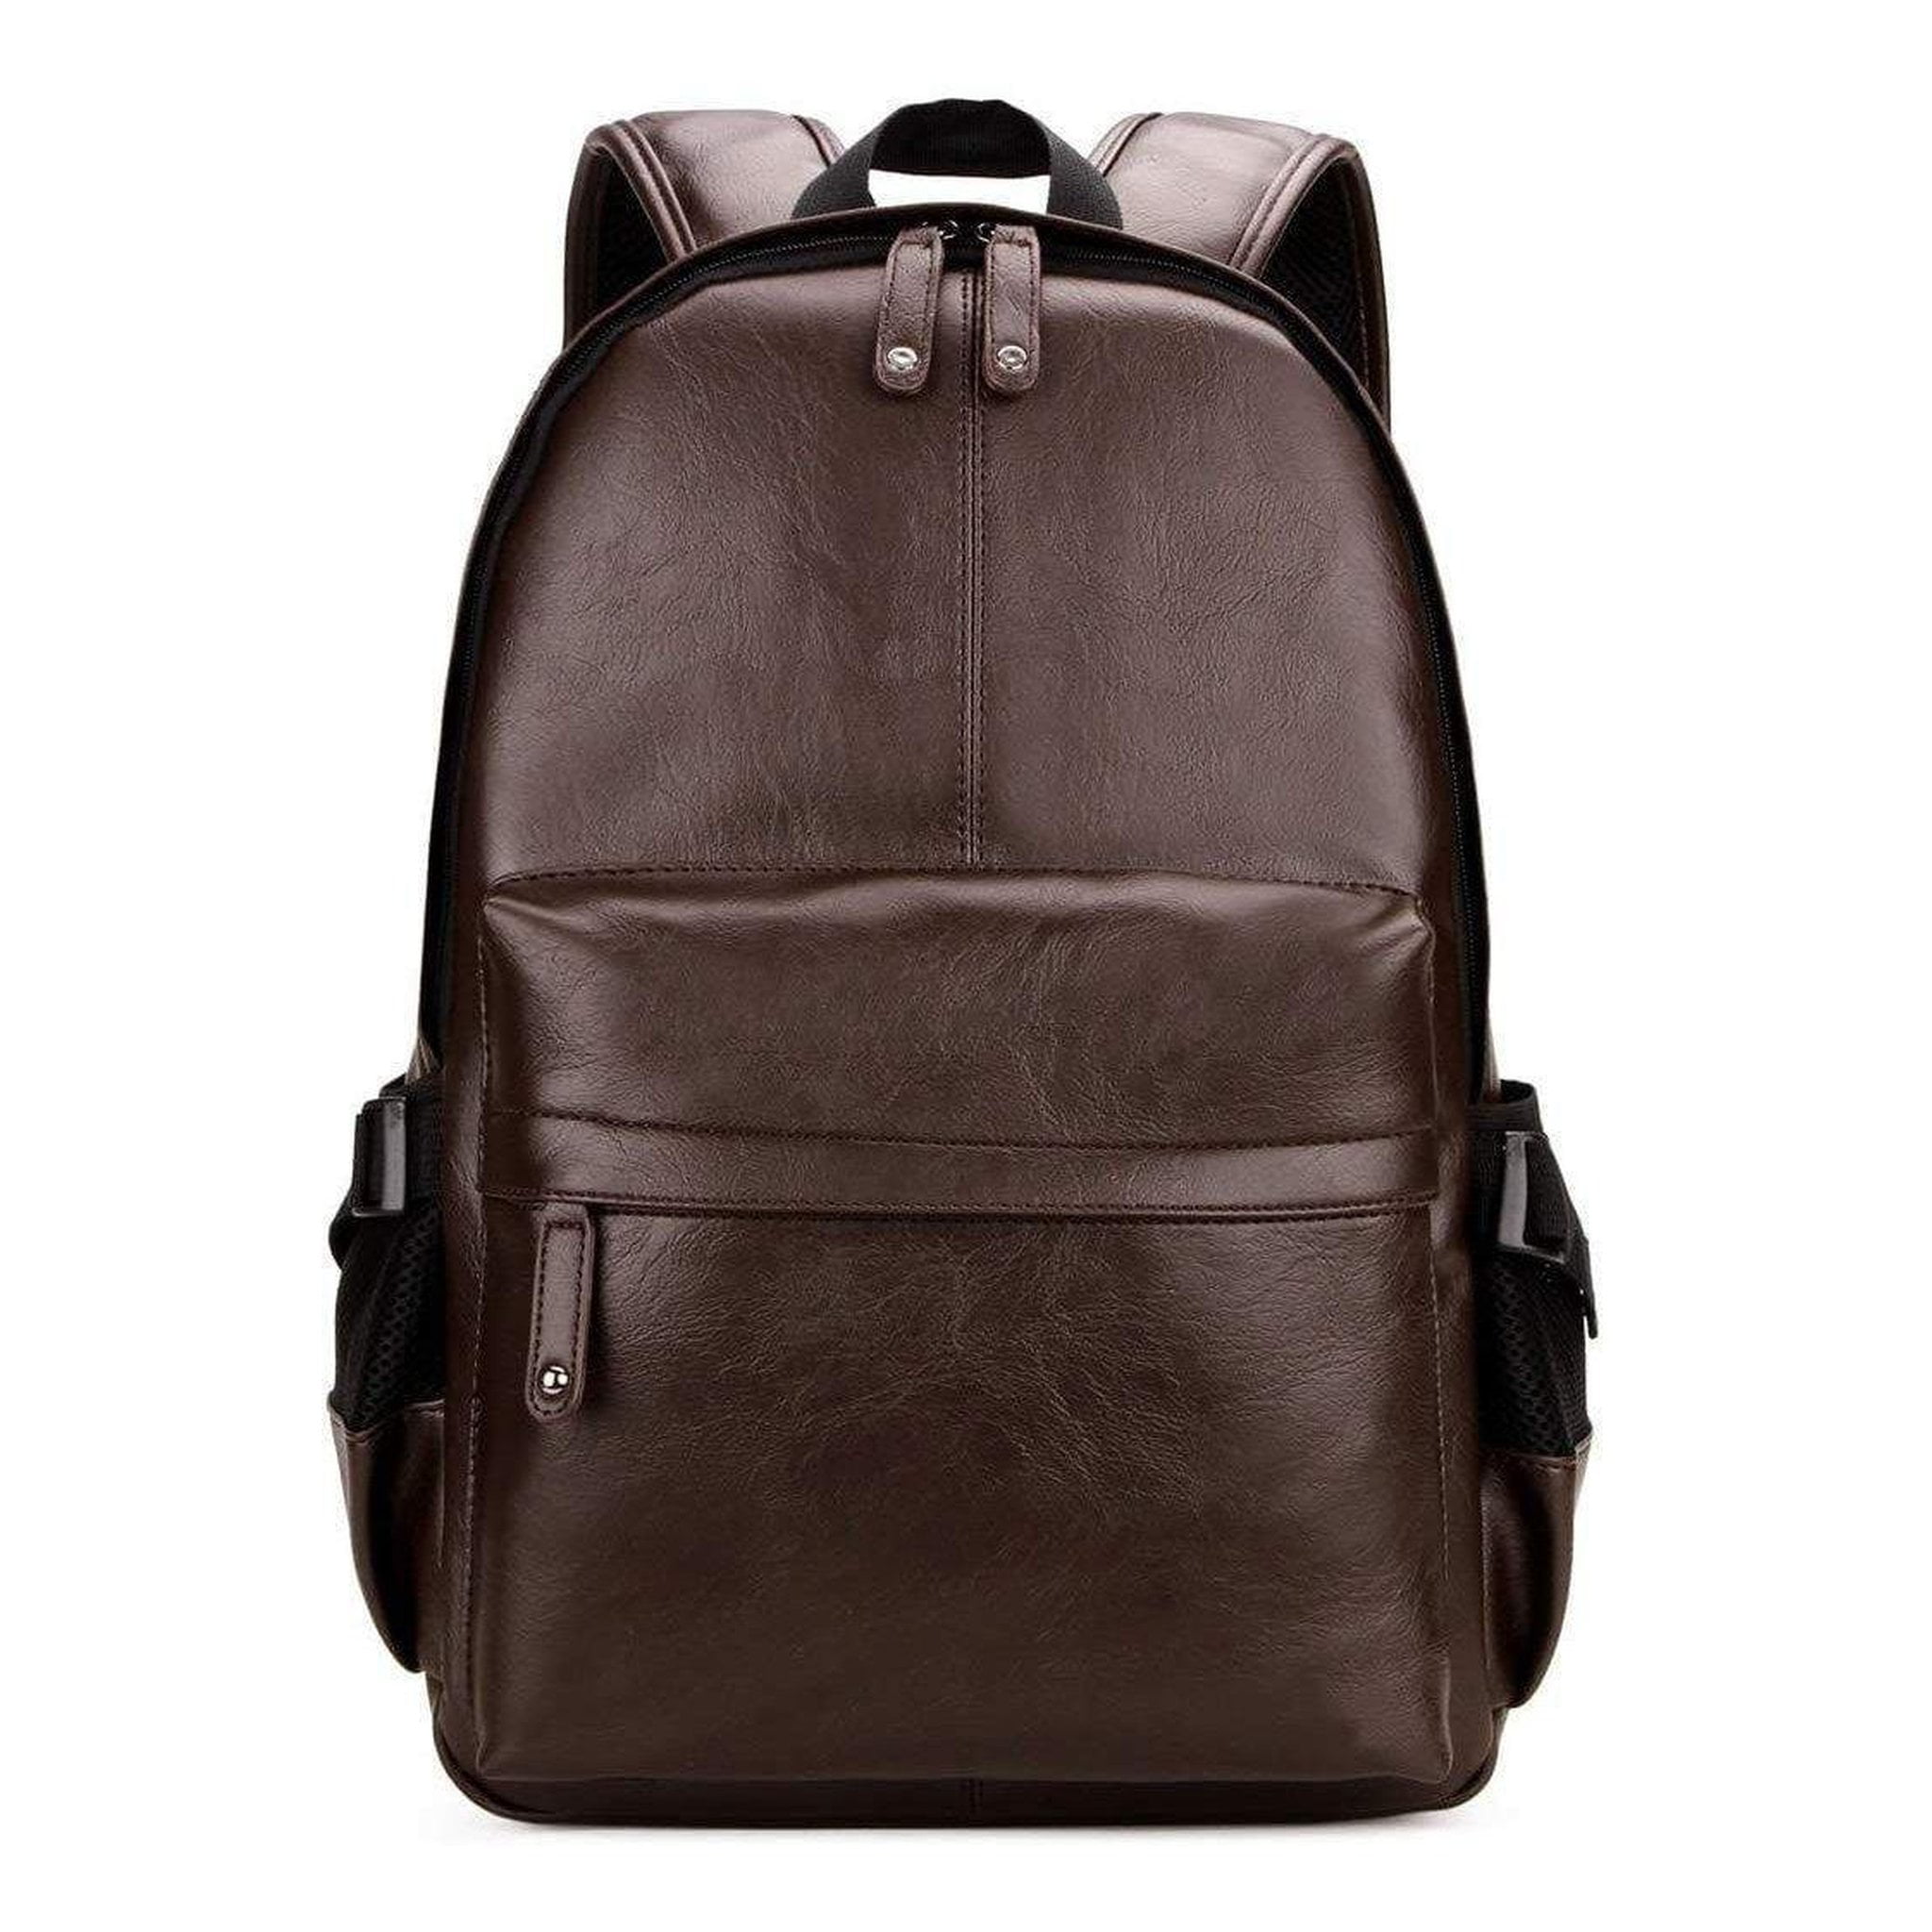 Backpack for Men Leather with Padded Shoulder Straps - Walmart.com